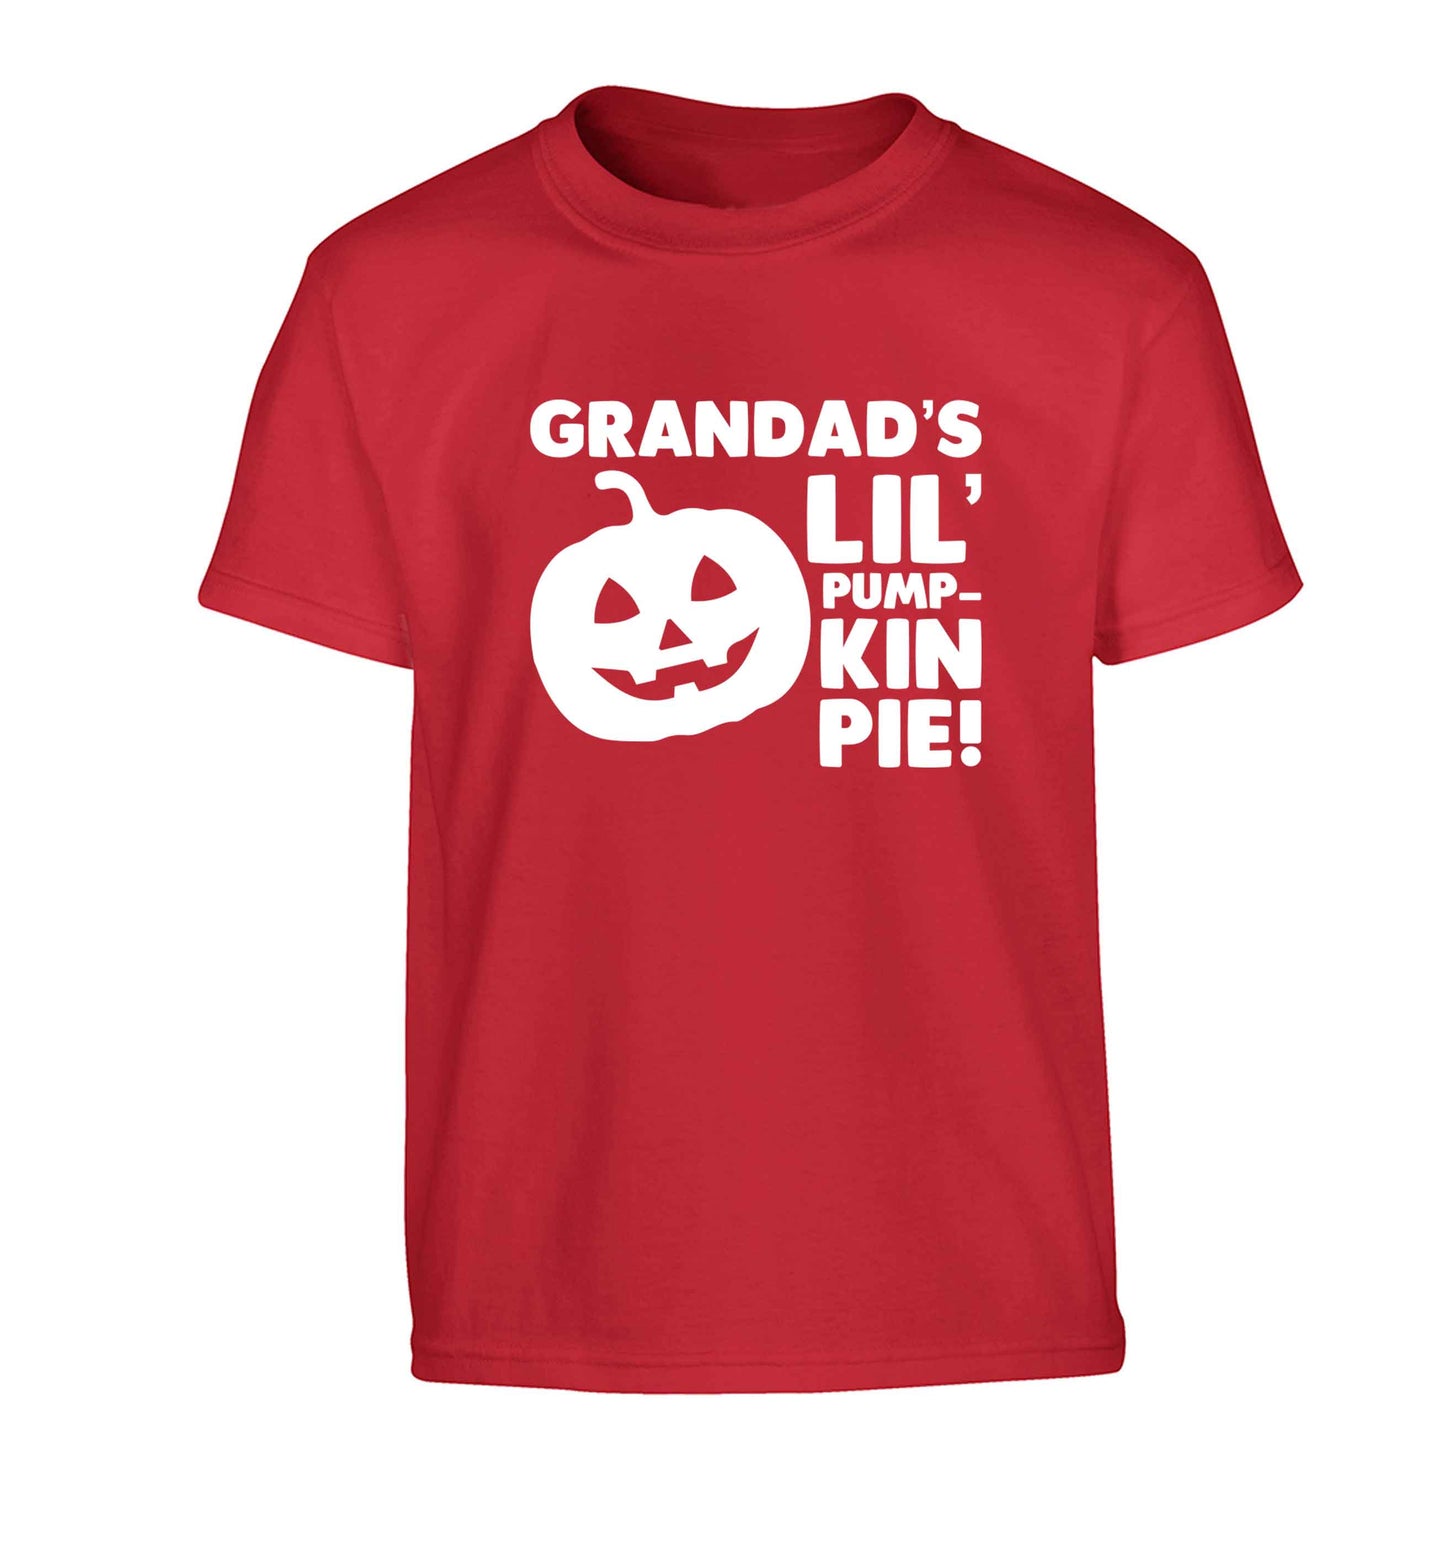 Grandad's lil' pumpkin pie Children's red Tshirt 12-13 Years